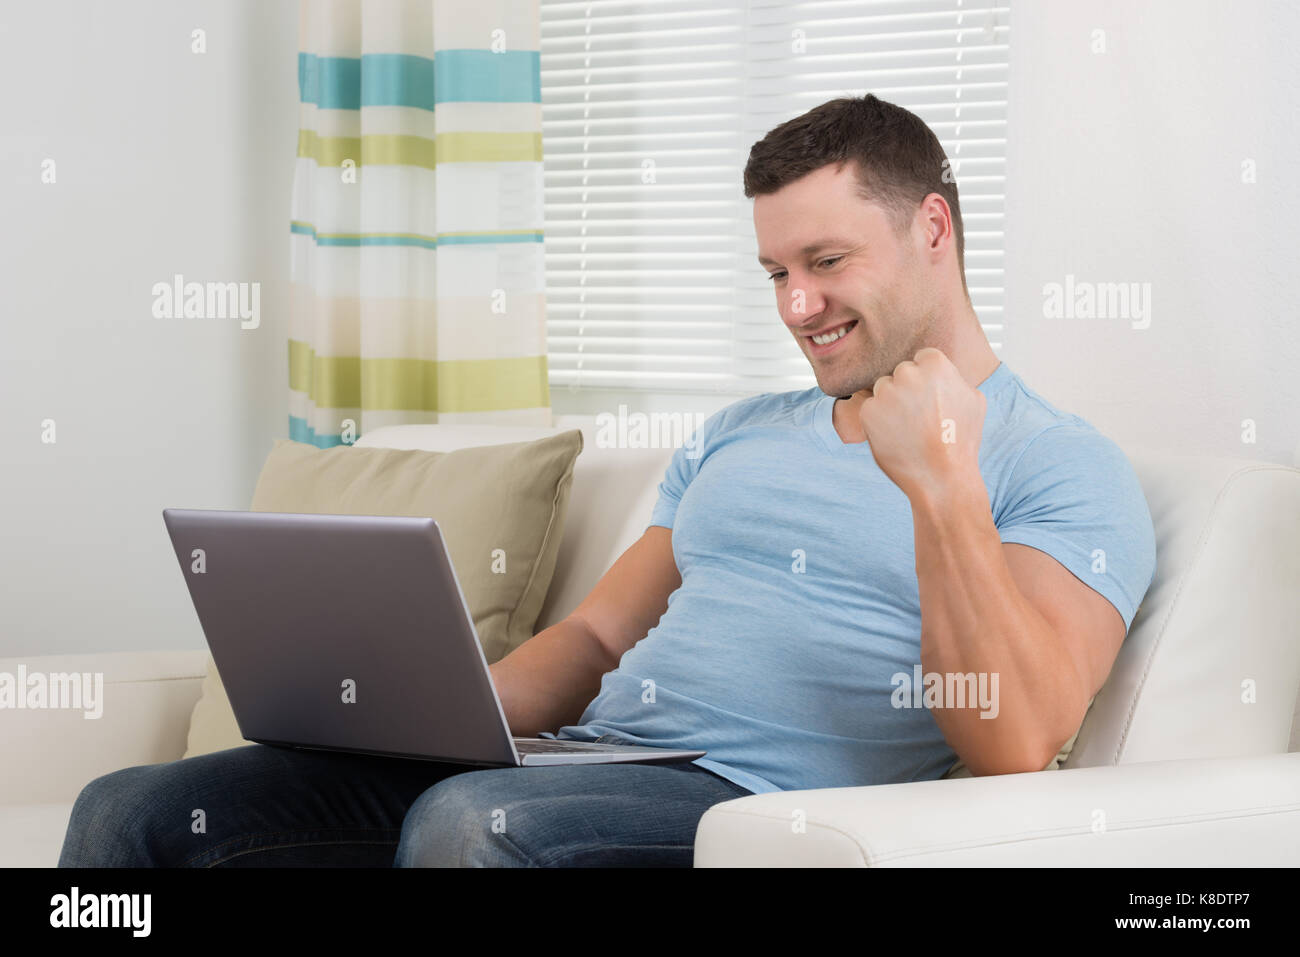 Lächelnd Mitte der erwachsene Mann ballte die Faust, während mit Laptop auf dem Sofa zu Hause Stockfoto